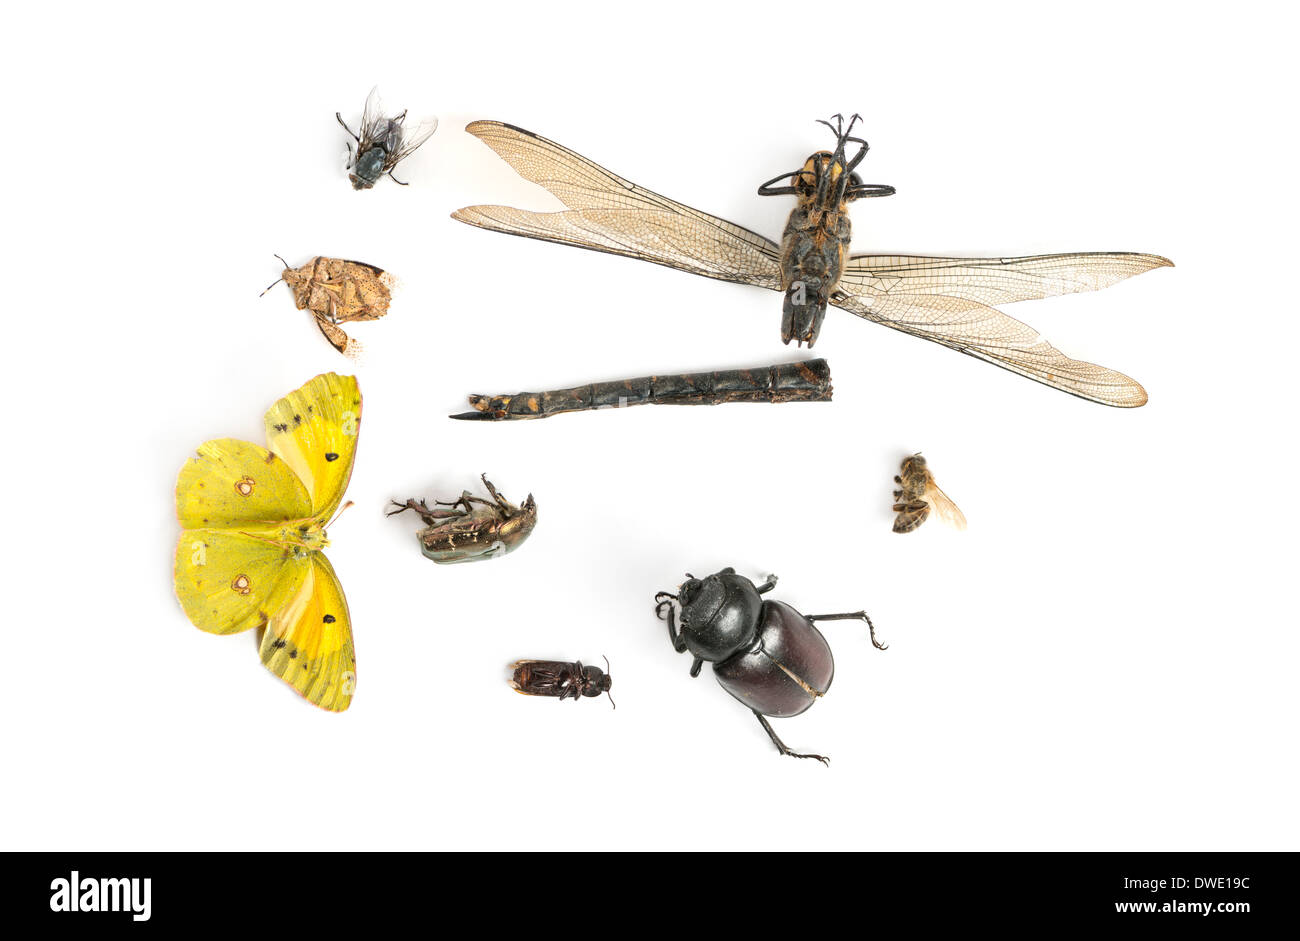 Composición con insectos muertos delante de un fondo blanco Foto de stock